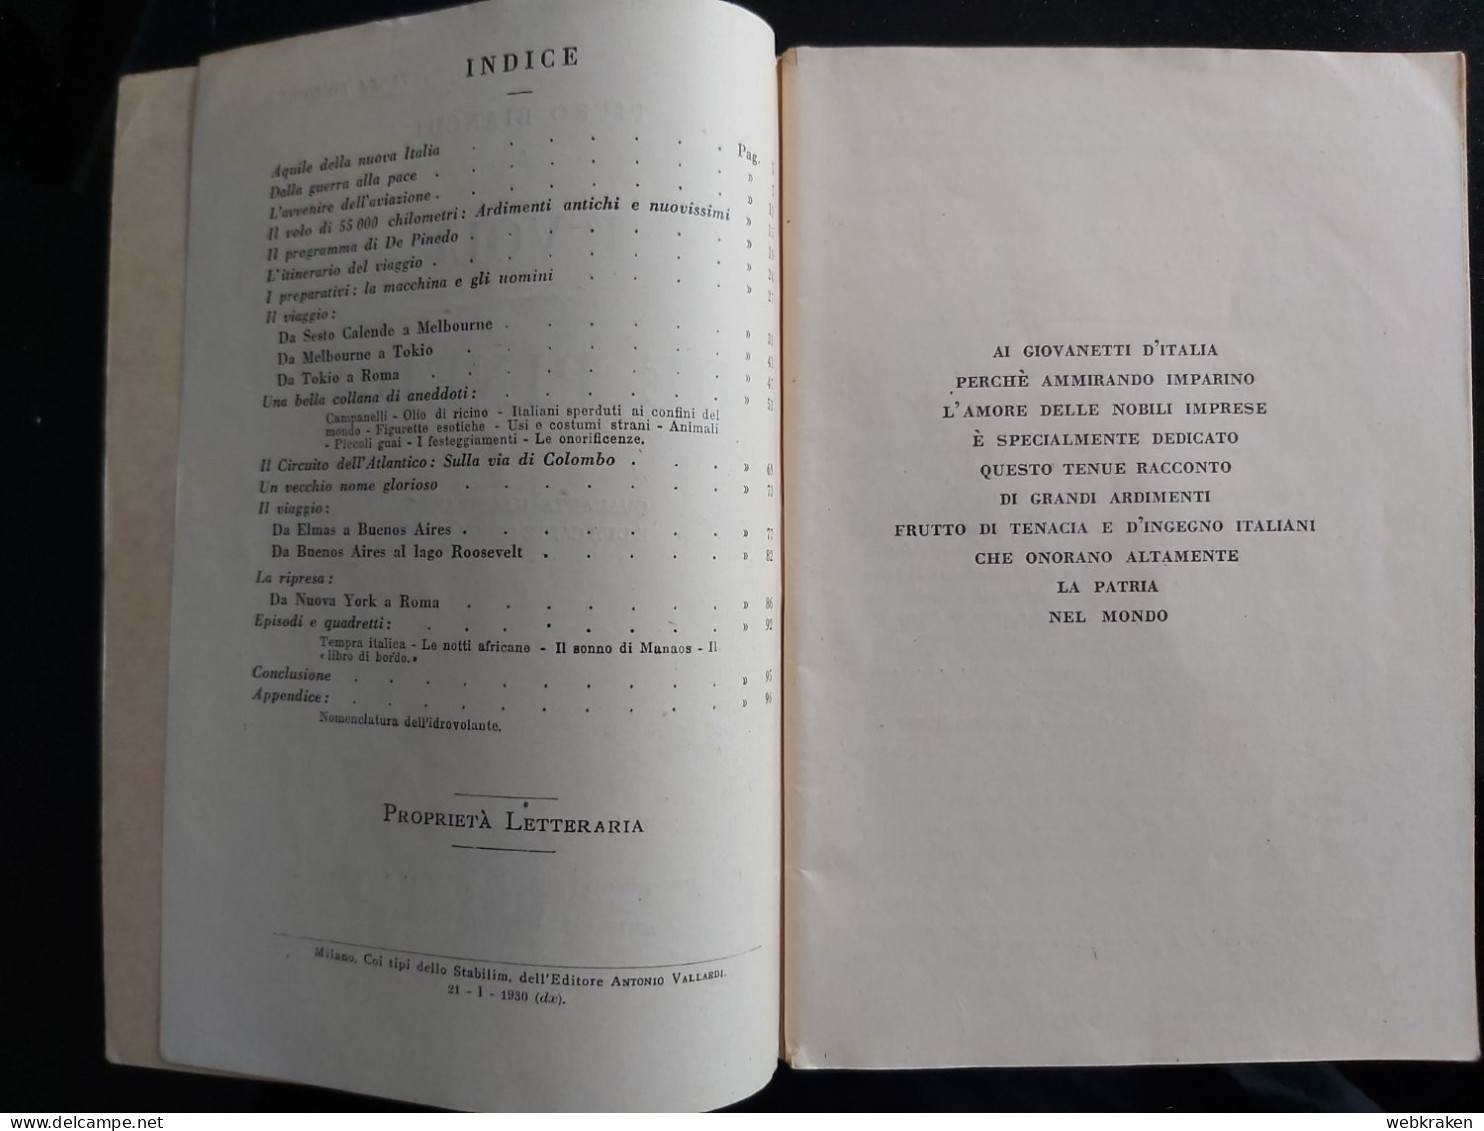 I VOLI DI DE PINEDO DI PIERO BIANCHI 1930 ANTONIO VALLARDI EDITORE - Guerra 1939-45